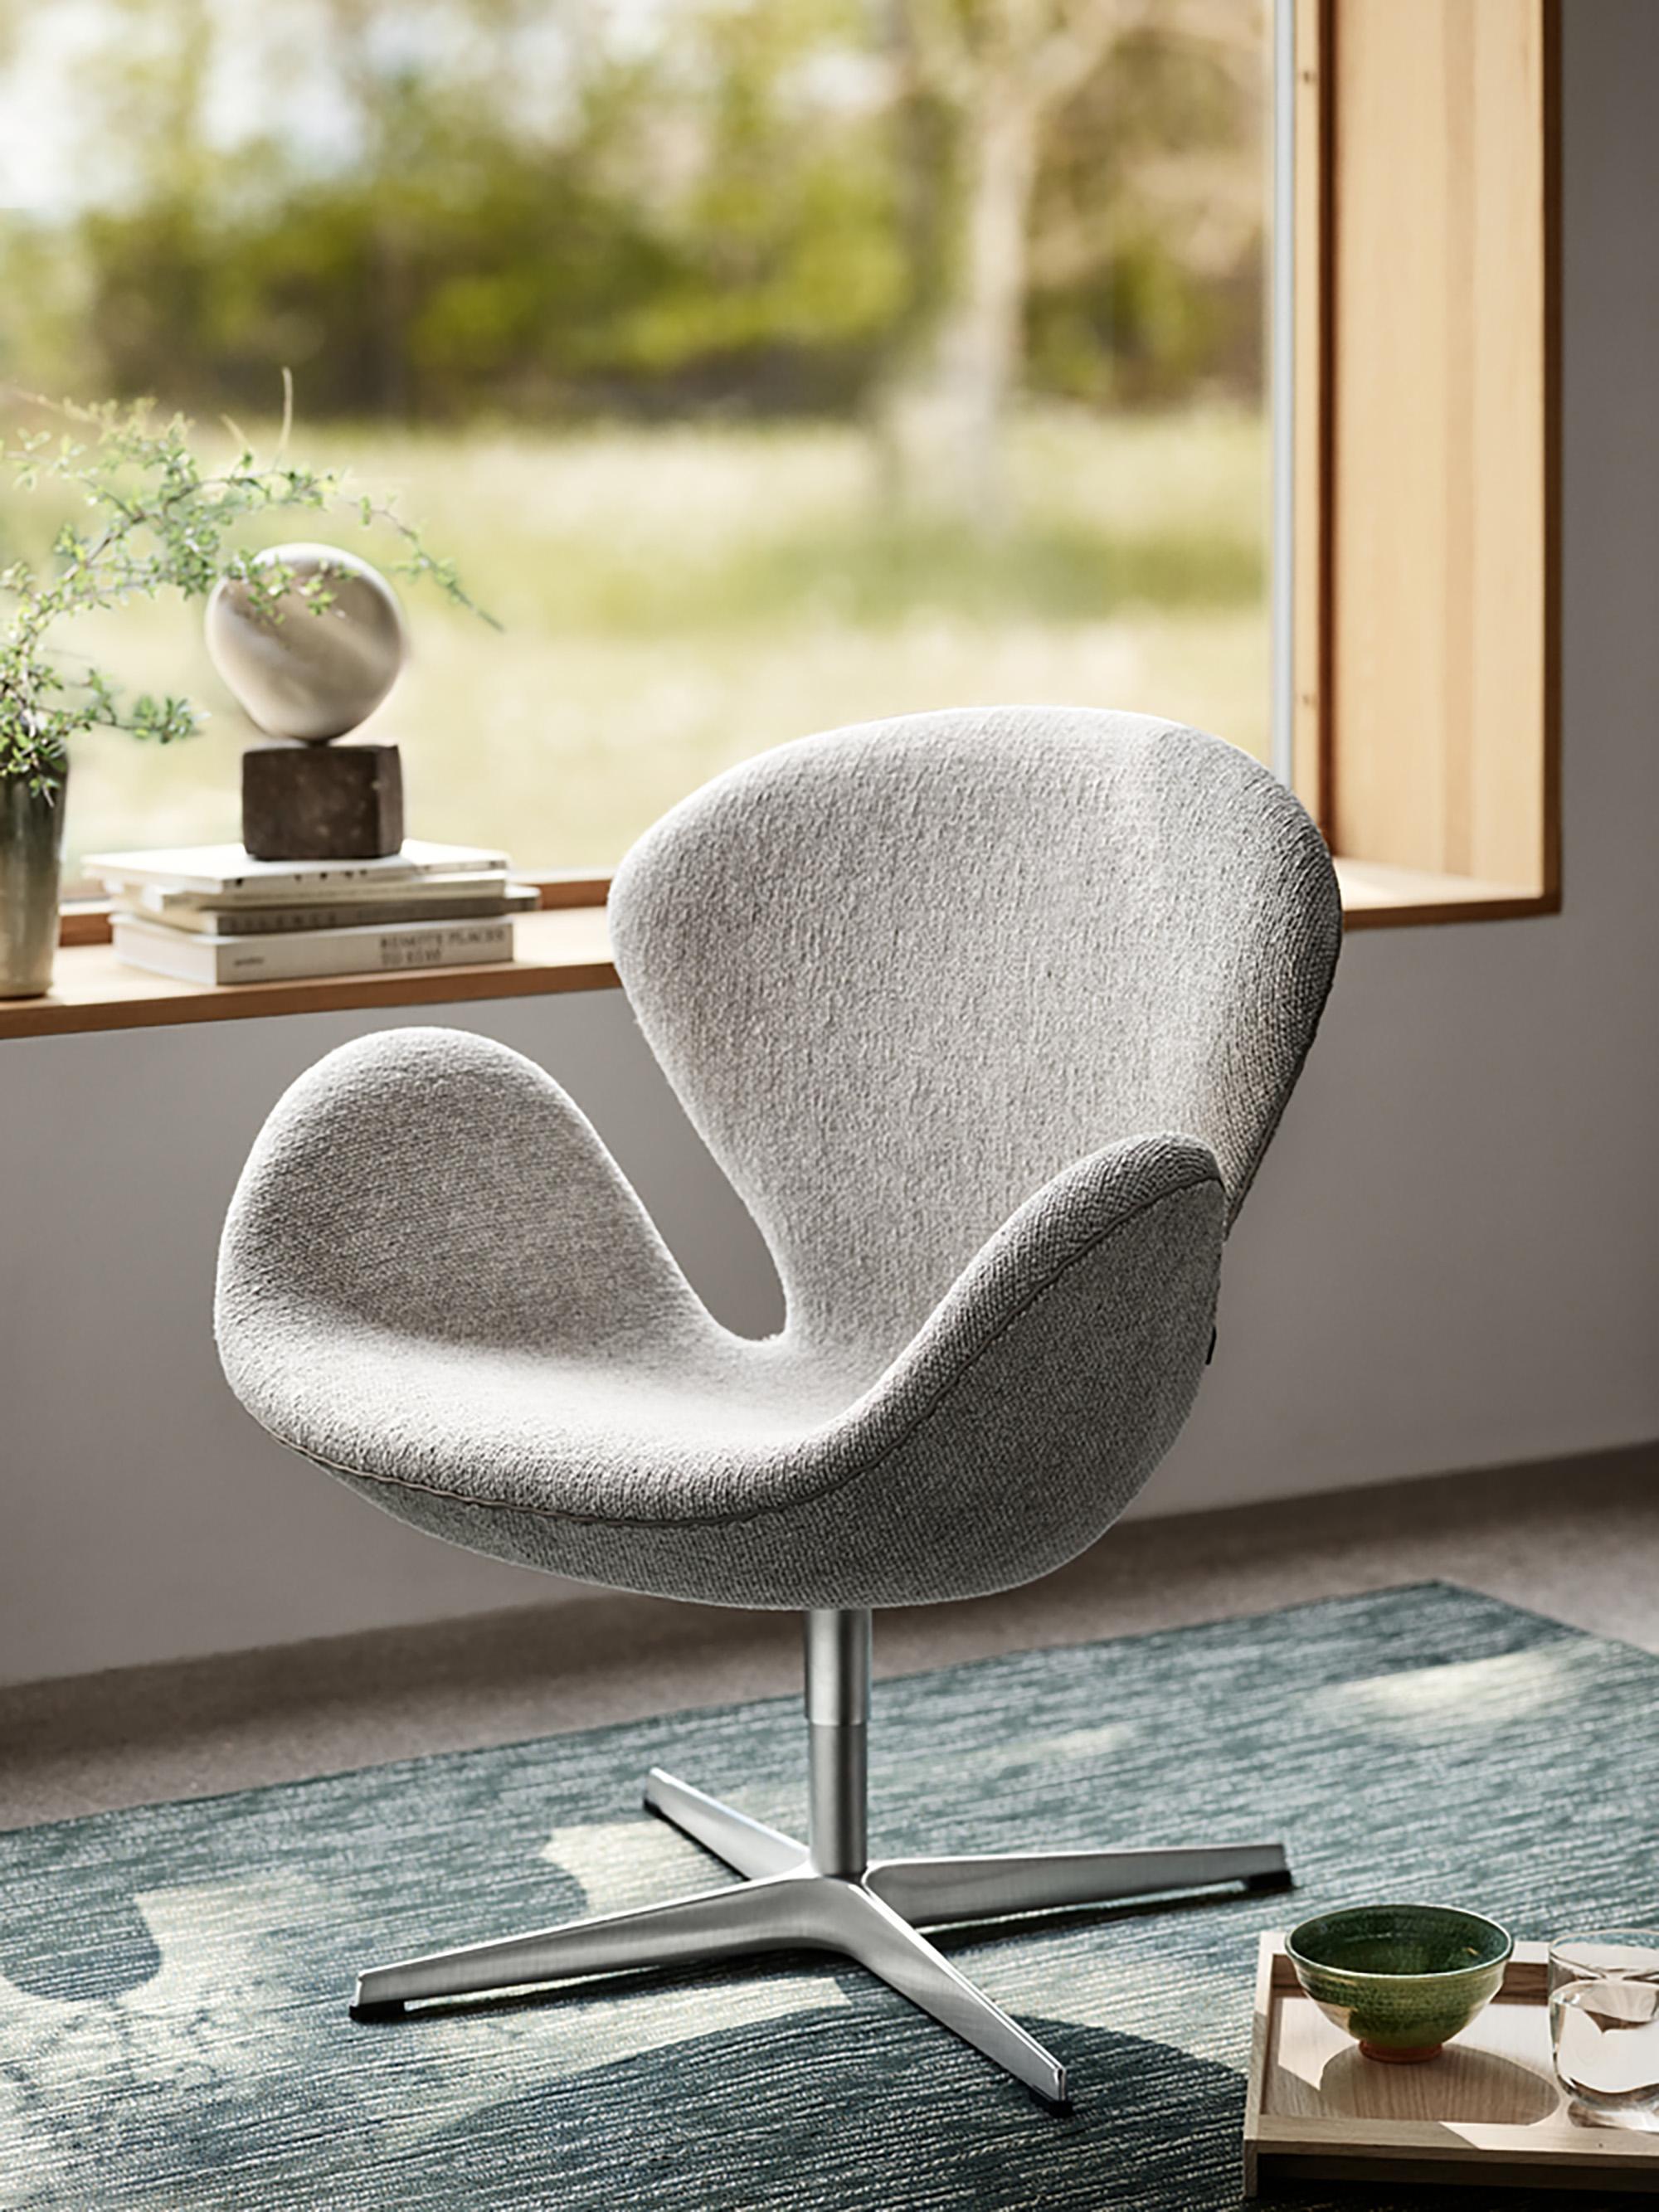 Arne Jacobsen 'Schwan'-Stuhl für Fritz Hansen in Stoffpolsterung (Kat. 2).

Fritz Hansen wurde 1872 gegründet und ist zum Synonym für legendäres dänisches Design geworden. Die Marke kombiniert zeitlose Handwerkskunst mit einem Schwerpunkt auf